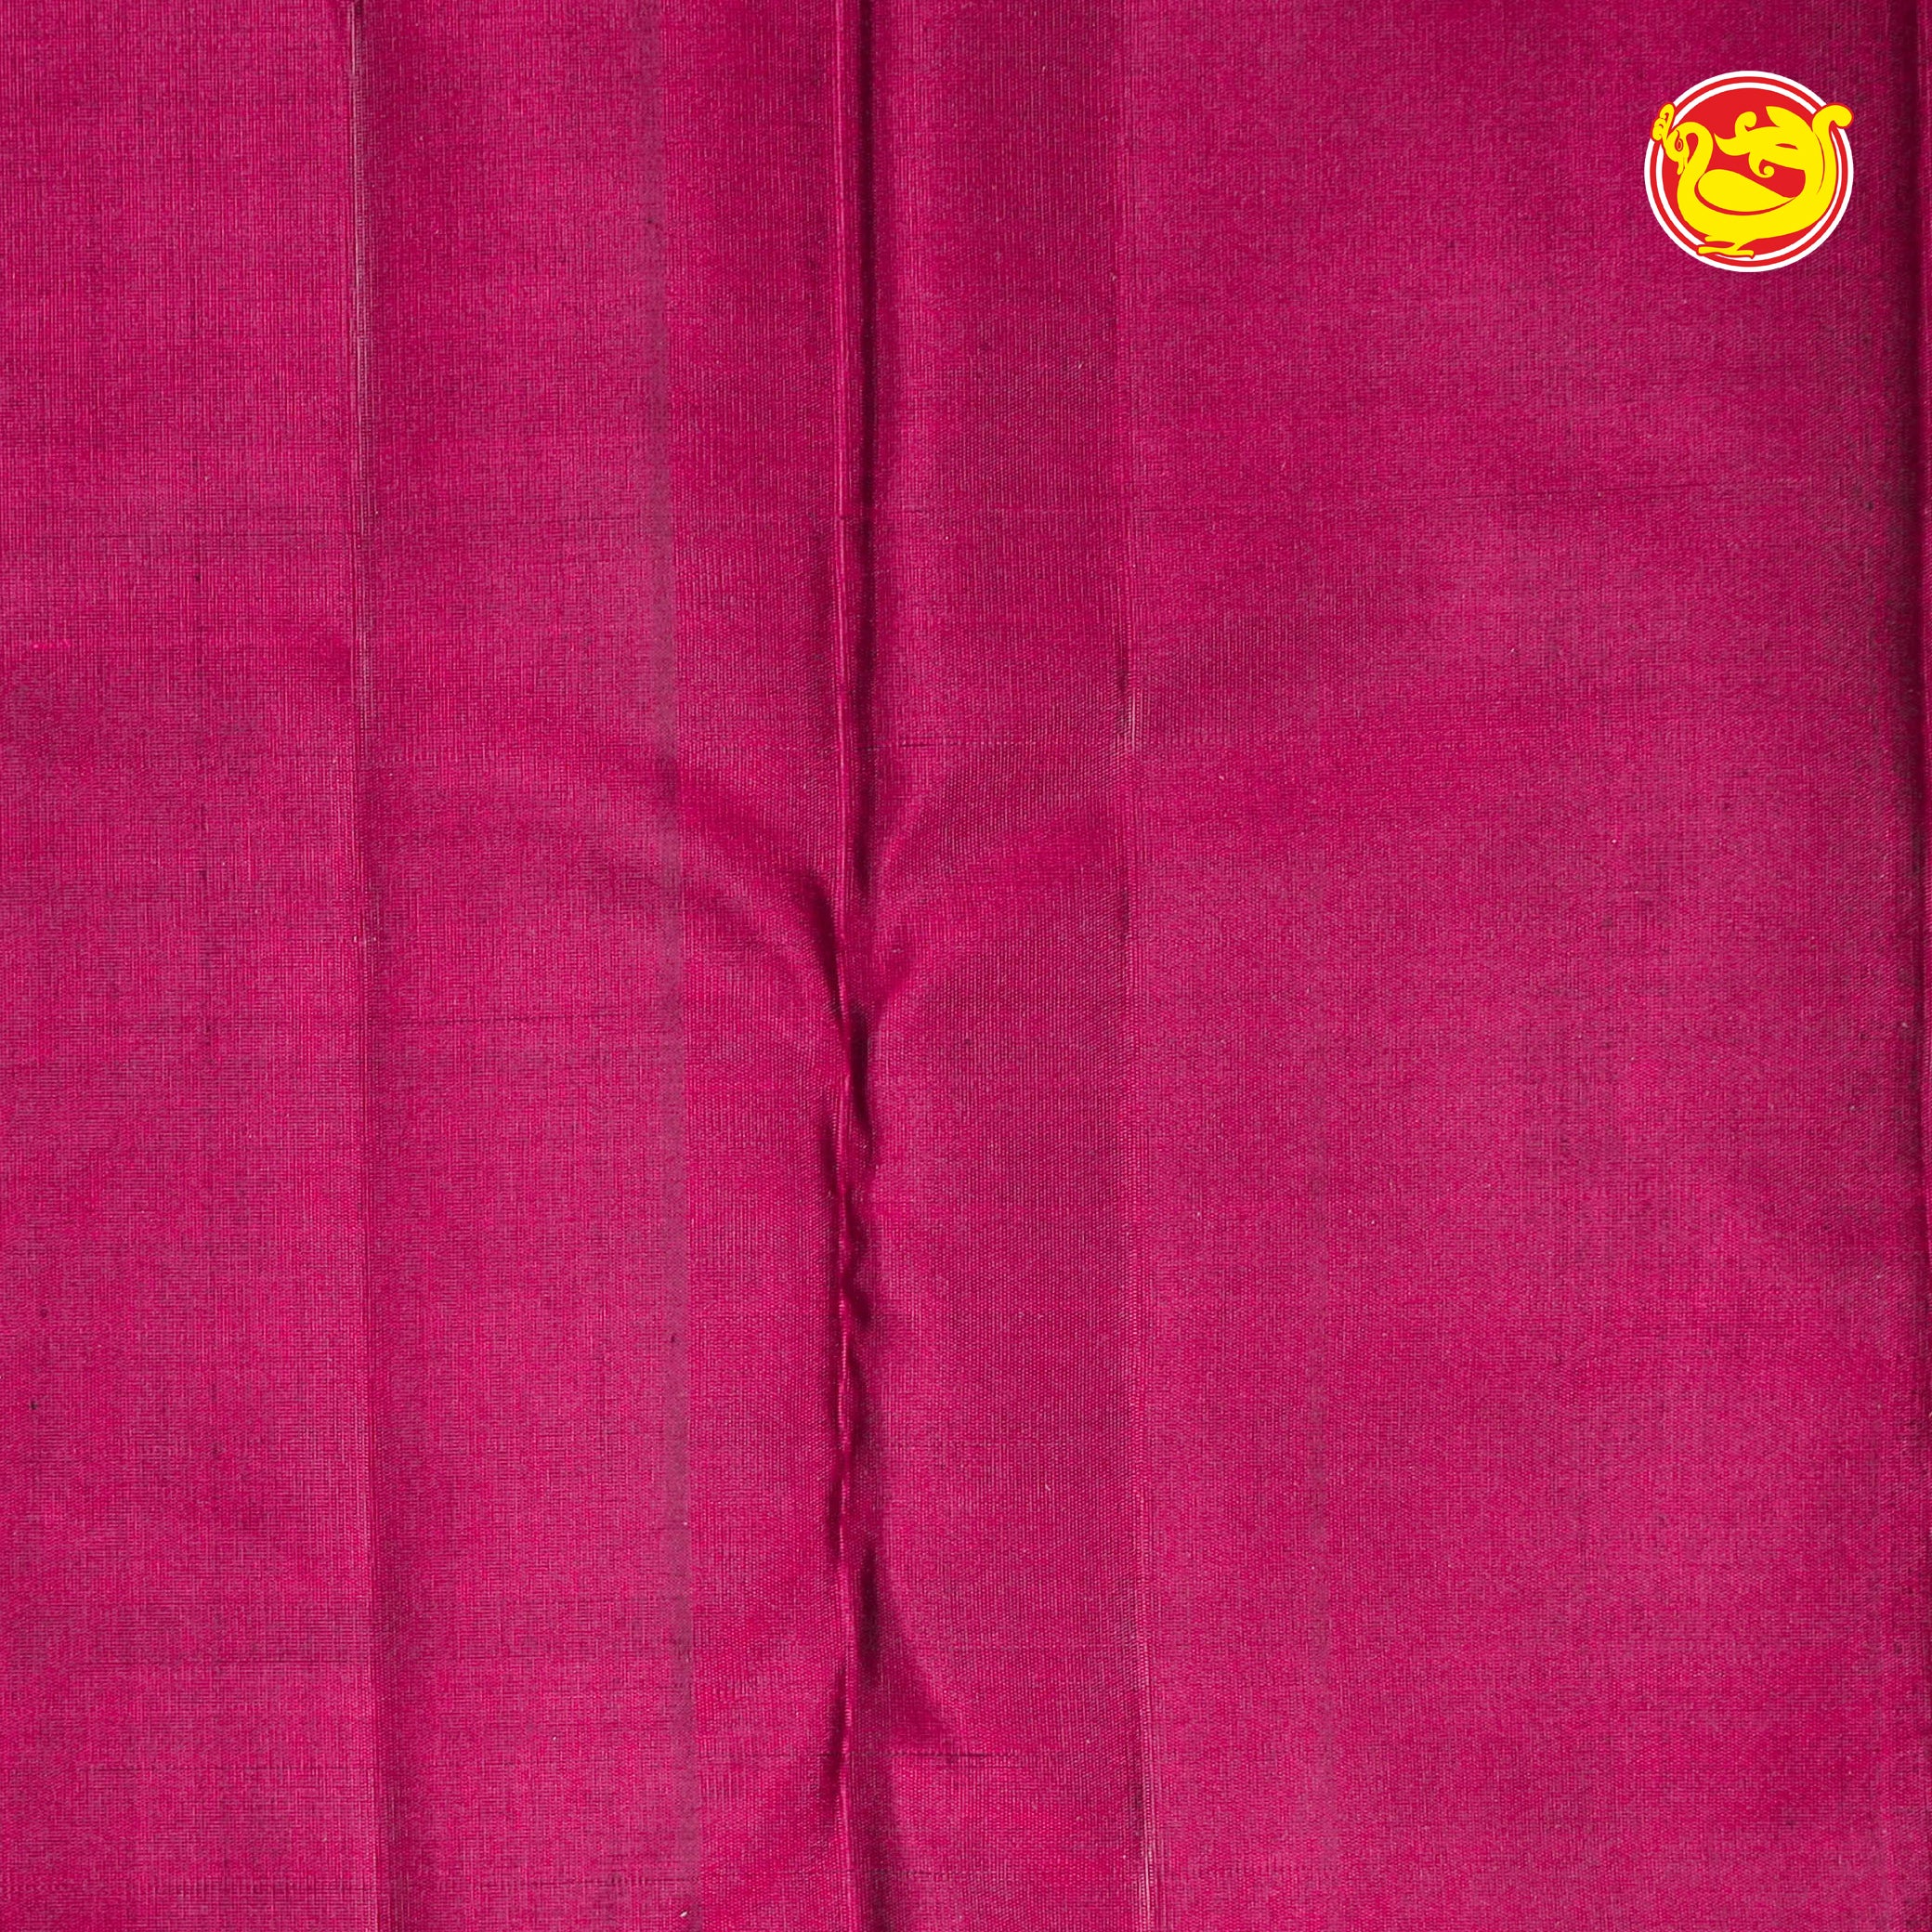 Jamun pink soft silk saree